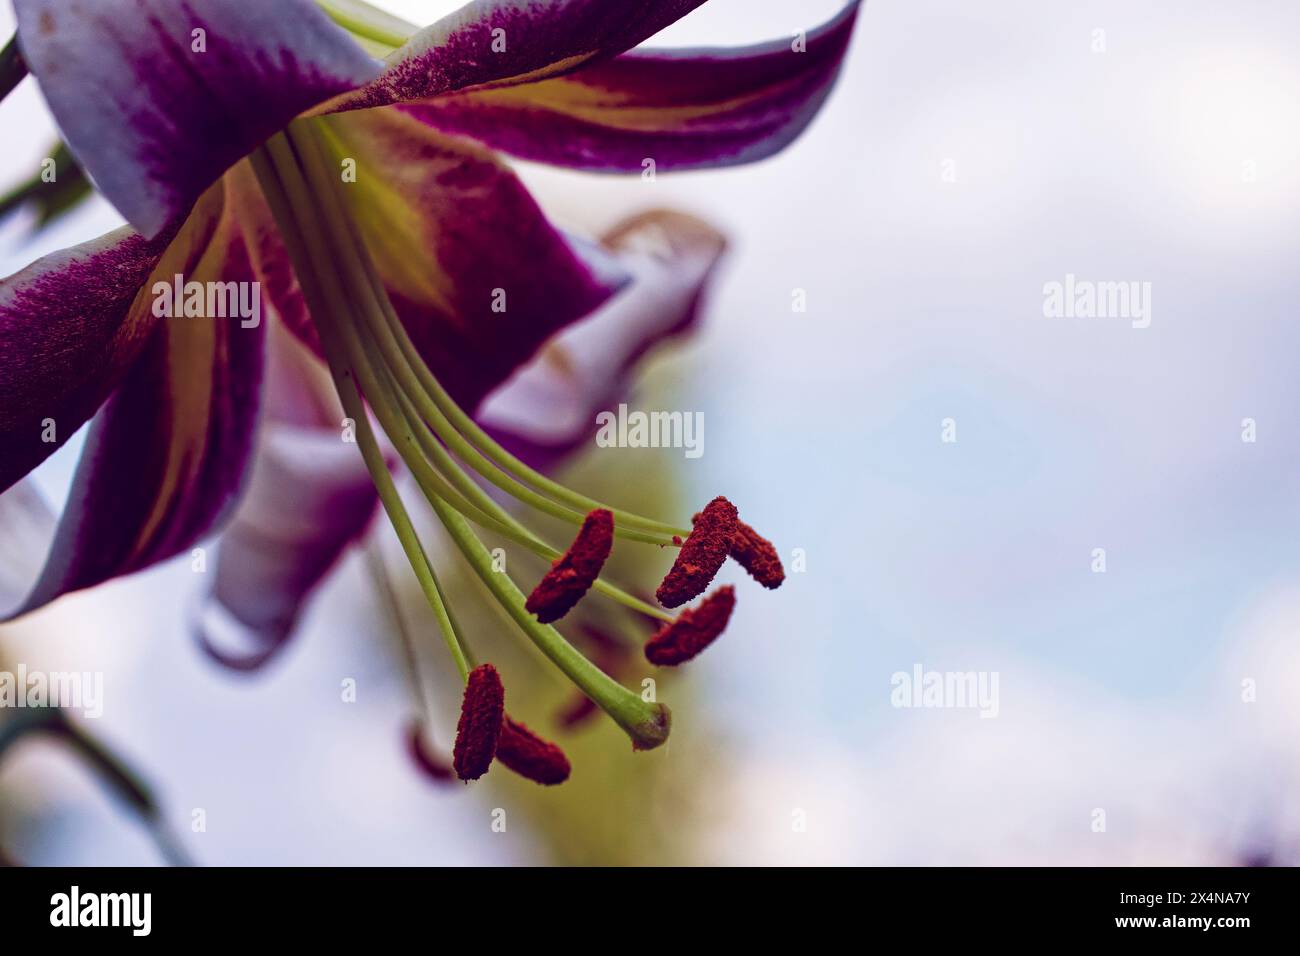 Detaillierte Abbildung einer Lilienblüte mit einer Mischung aus weißen und violetten Tönen auf ihren Blütenblättern, mit hervorstehenden Staubblättern, die nach außen reichen. Perfekt für den Garten Stockfoto